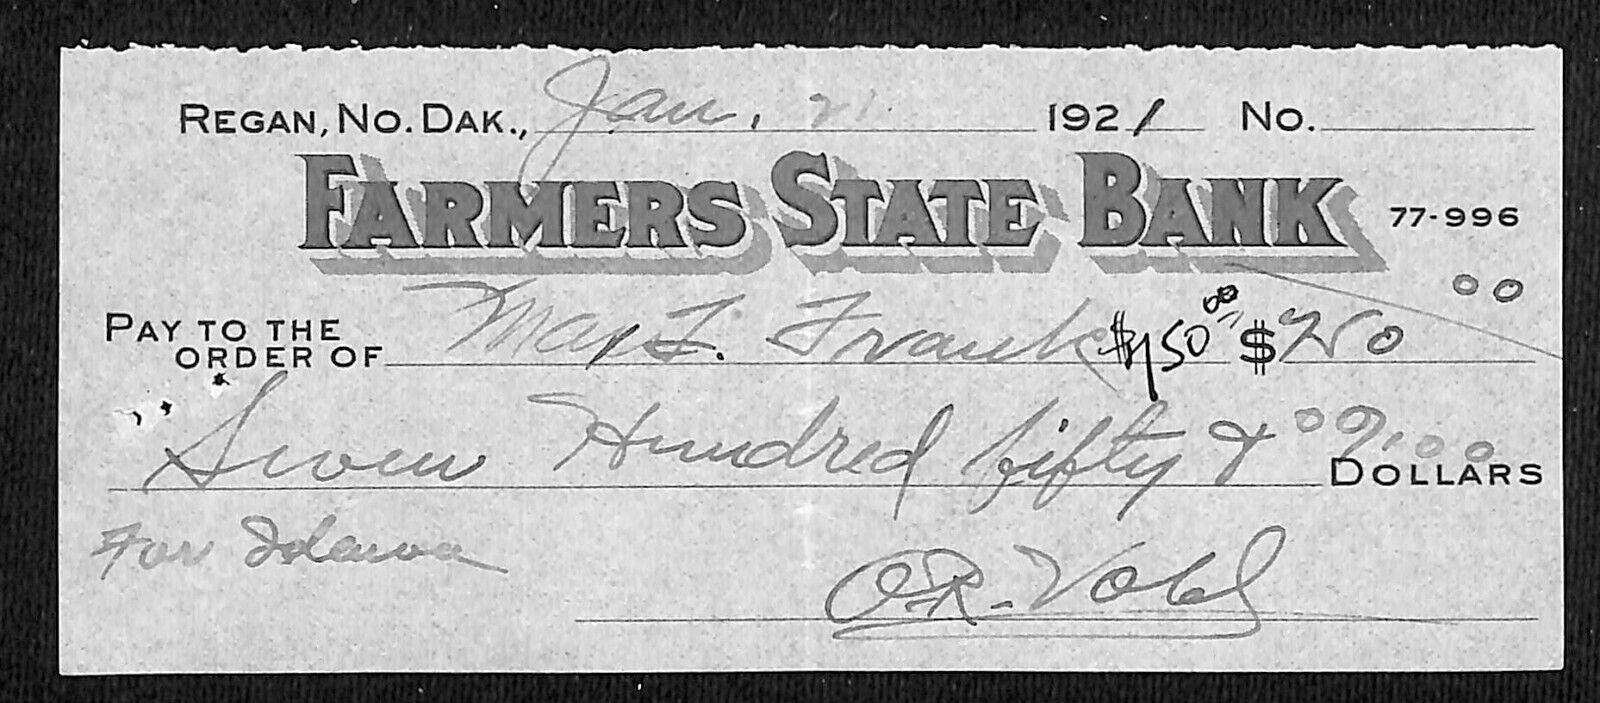 Regan, Dakota Farmers State 1921 Small Bank Check 